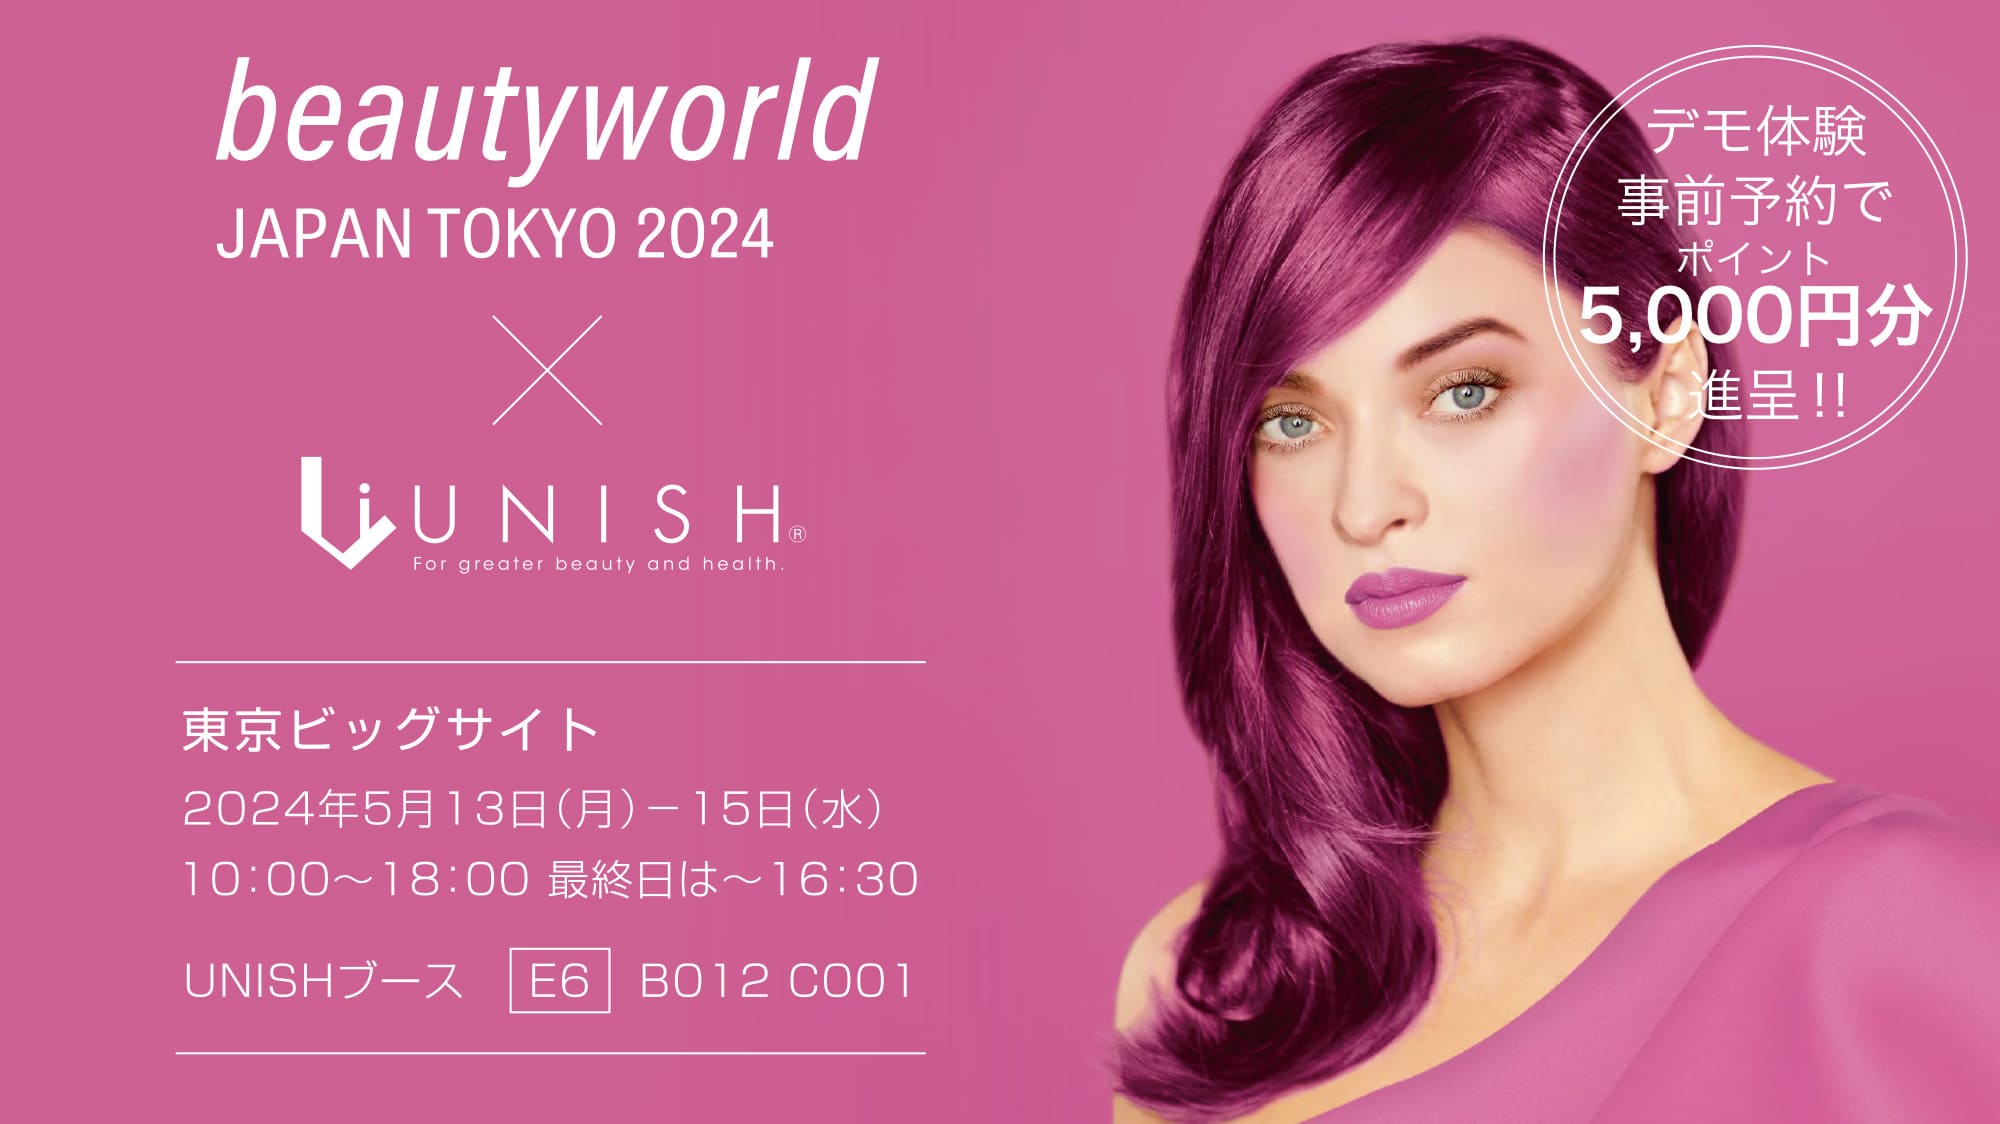 beautyword JAPAN TOKYO 2024 × UNISH／東京ビッグサイト／2024年5月13日（月）～15日（水）／10:00～18:00、最終日は～16:30 UNISHブース E6 B012 C001／デモ体験d前予約でポイント5,000円分進呈。